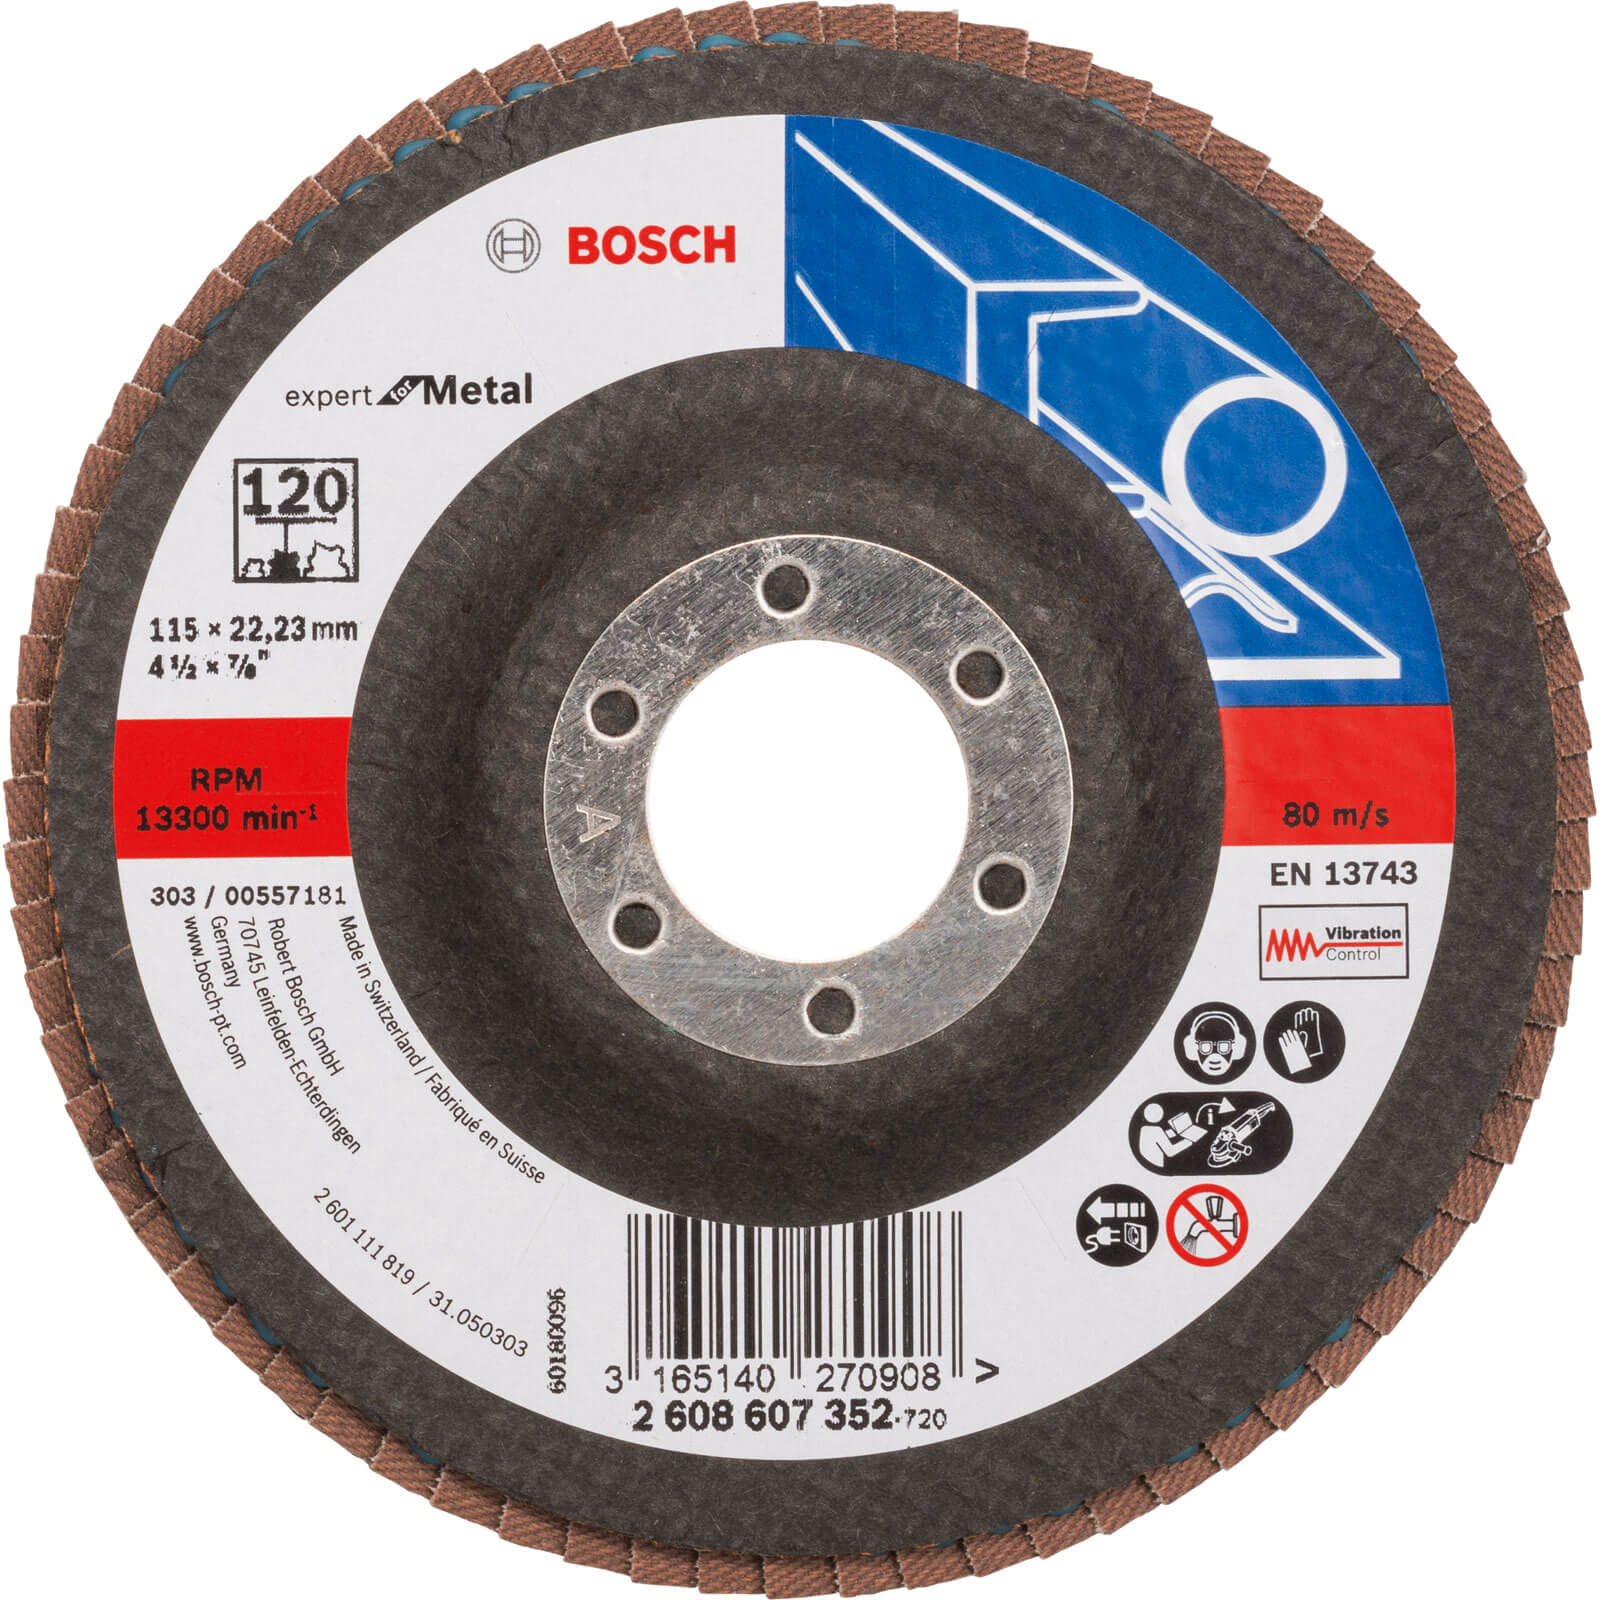 Photos - Cutting Disc Bosch Expert X551 for Metal Flap Disc 115mm 120g Pack of 1 2608607352 